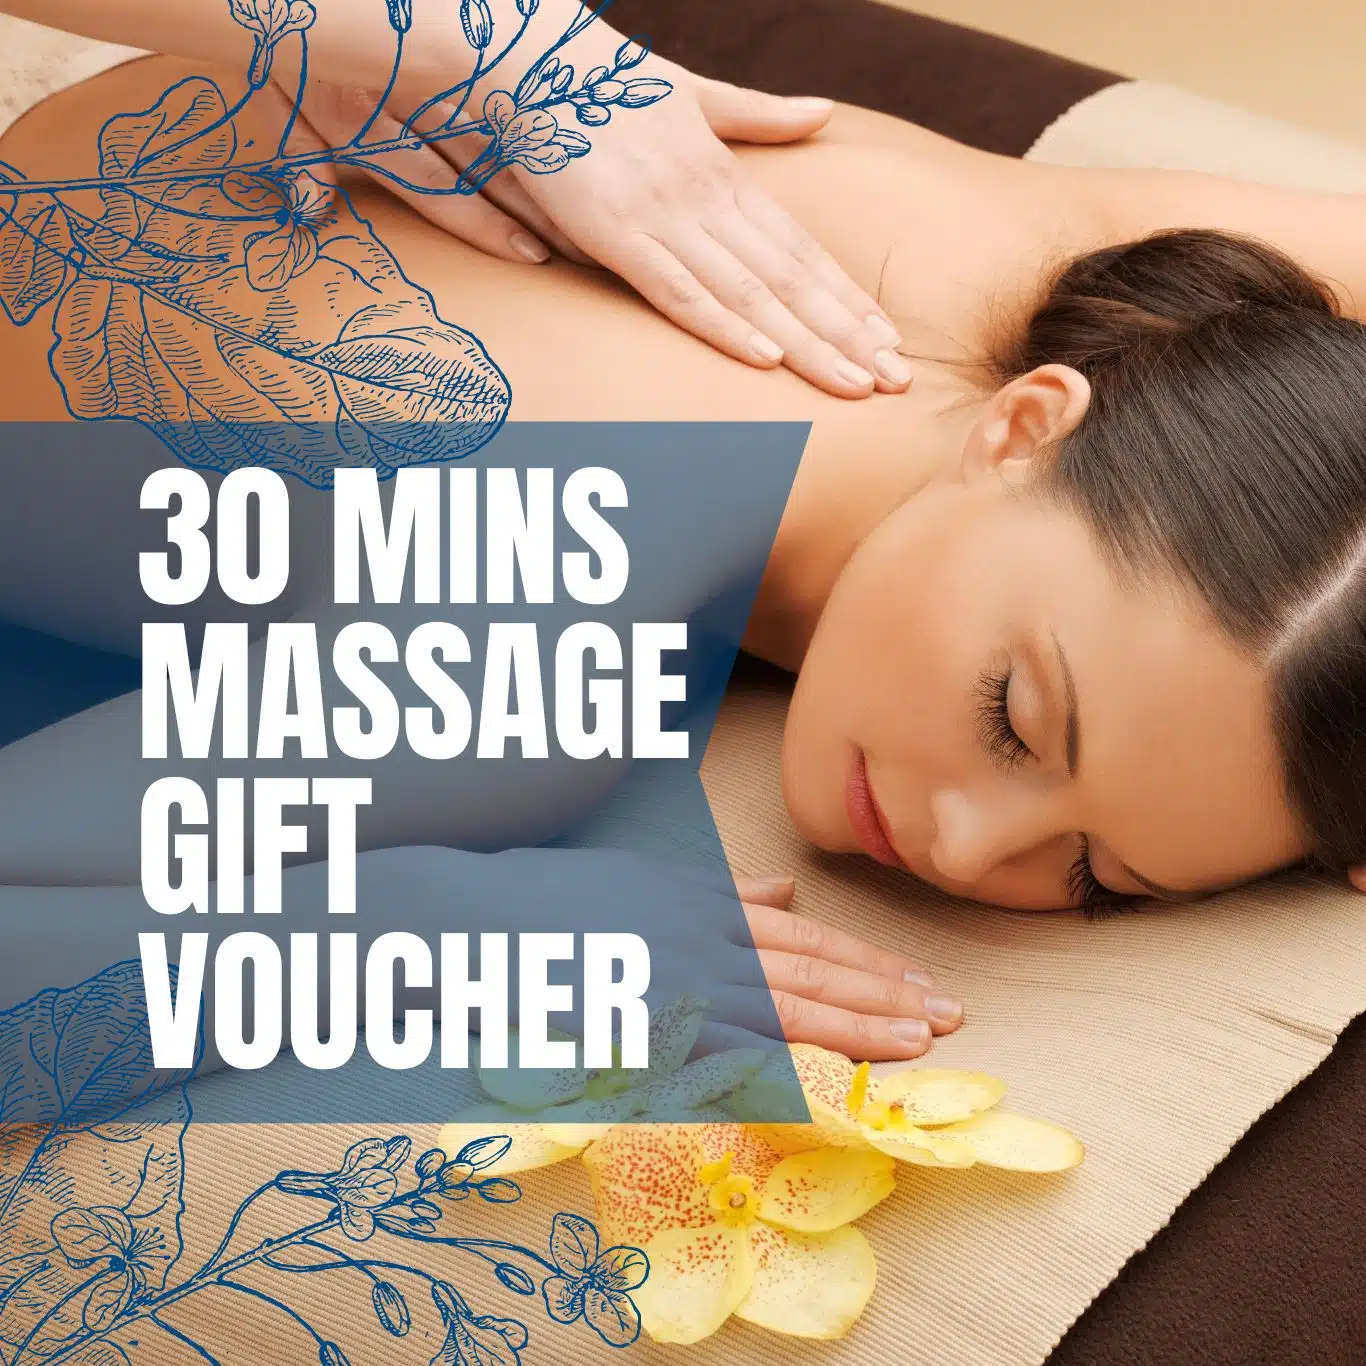 30 minutes massage gift voucher